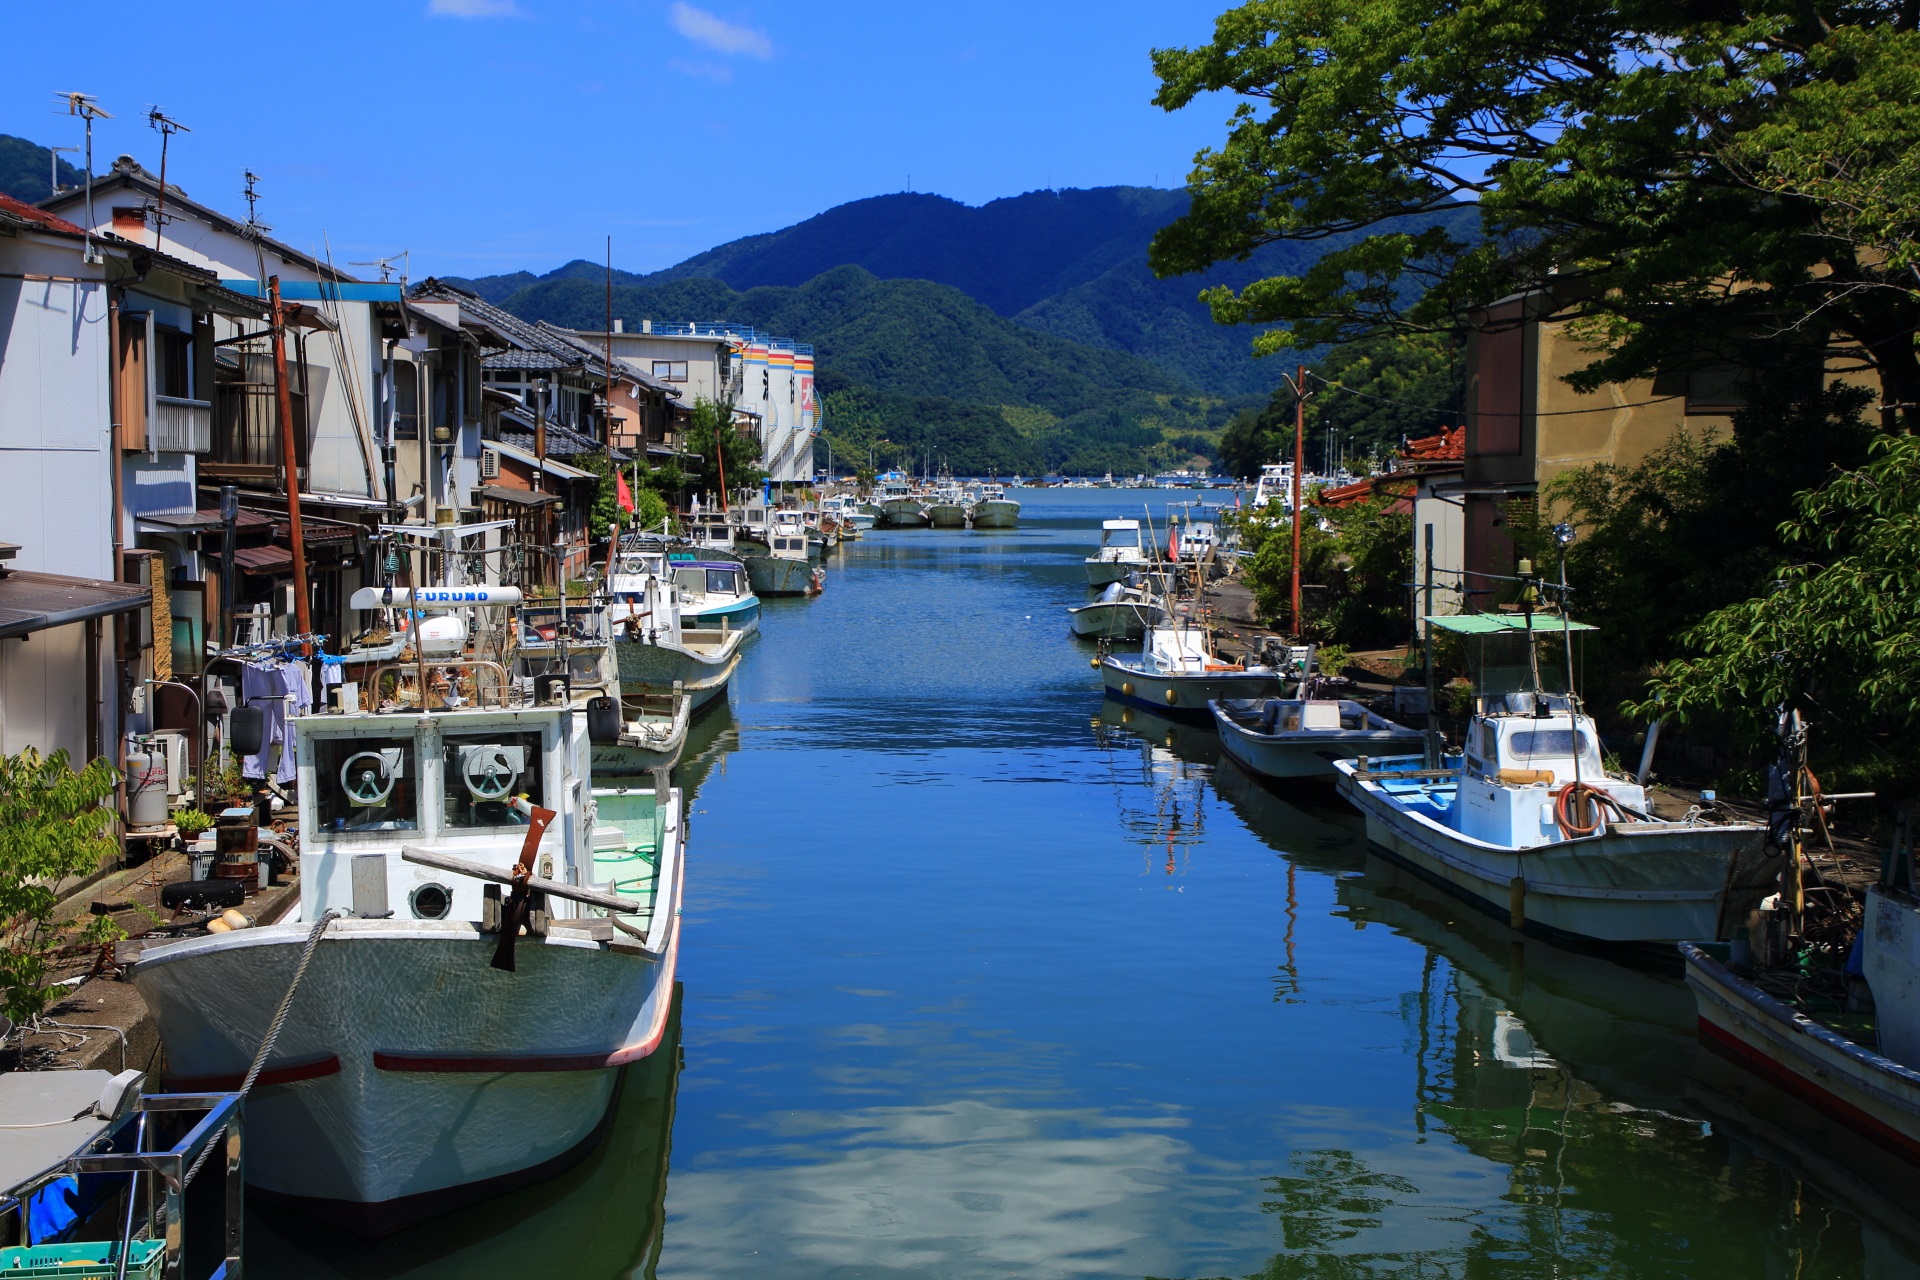 吉原入江　舞鶴の風情ある漁港の街並みと伊佐津川